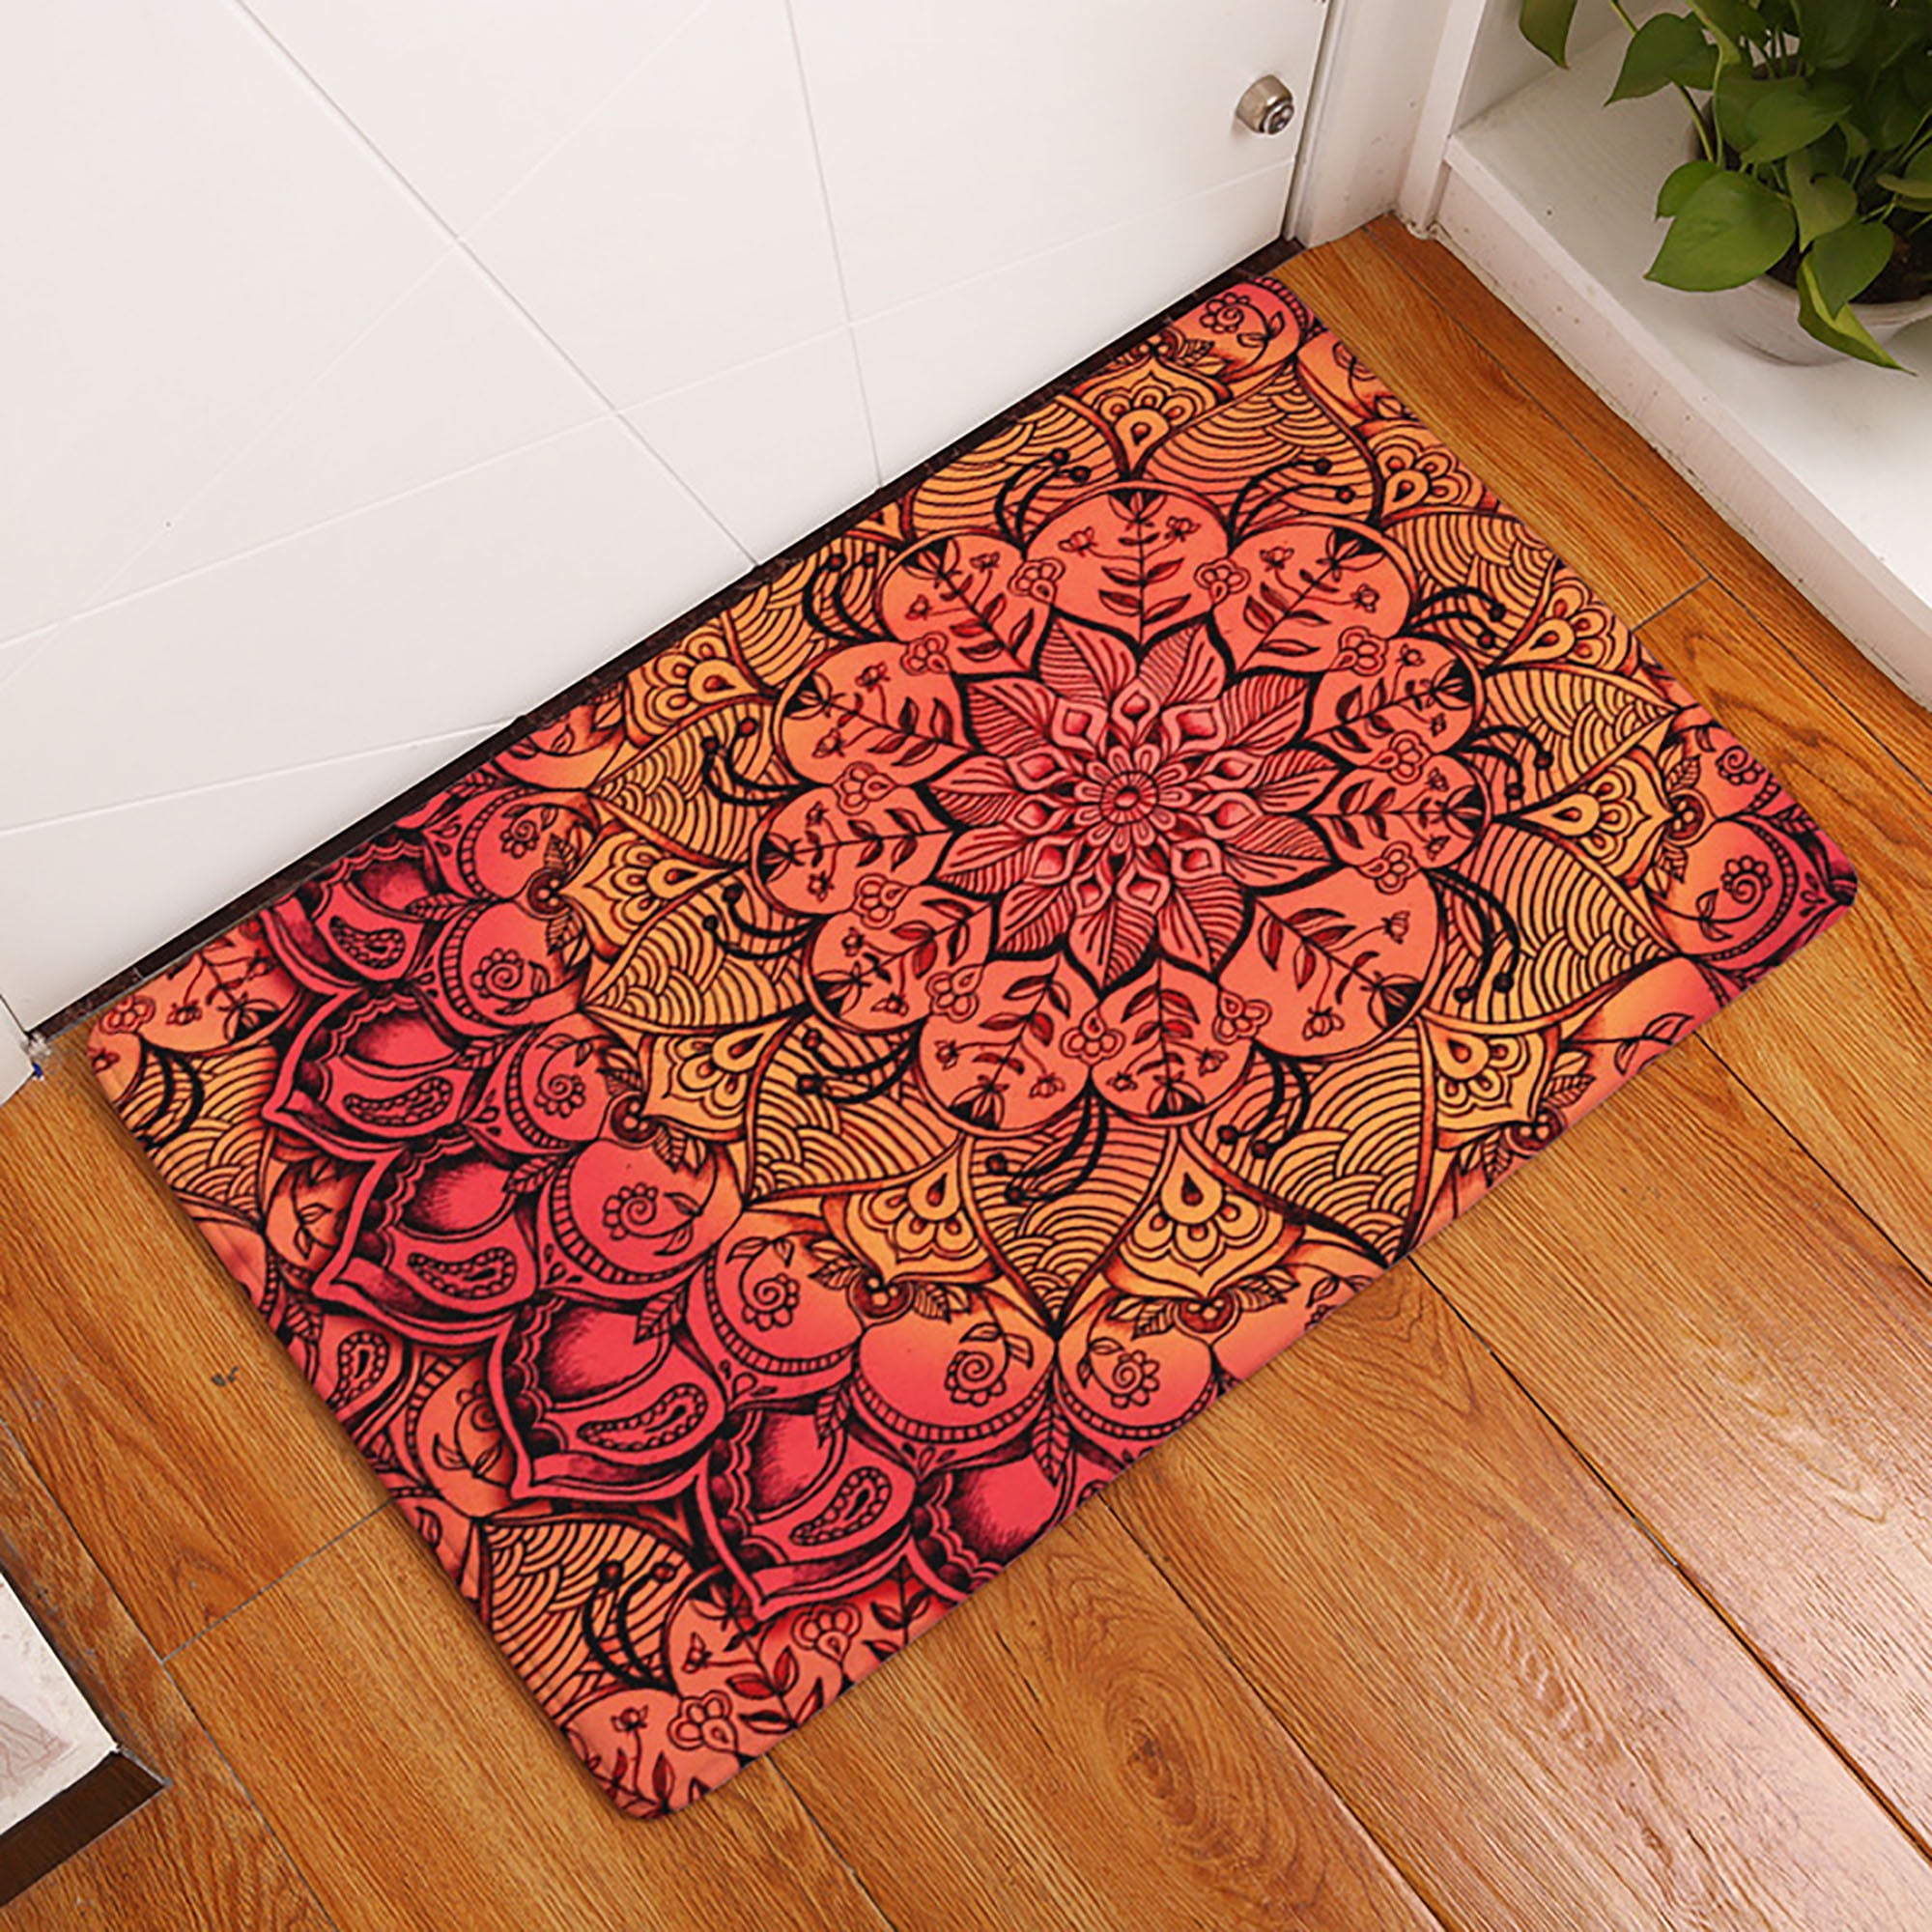 Indoor Happy New Year Floor Mat Nonslip Entrance Home Office Doormat Rug Carpet 